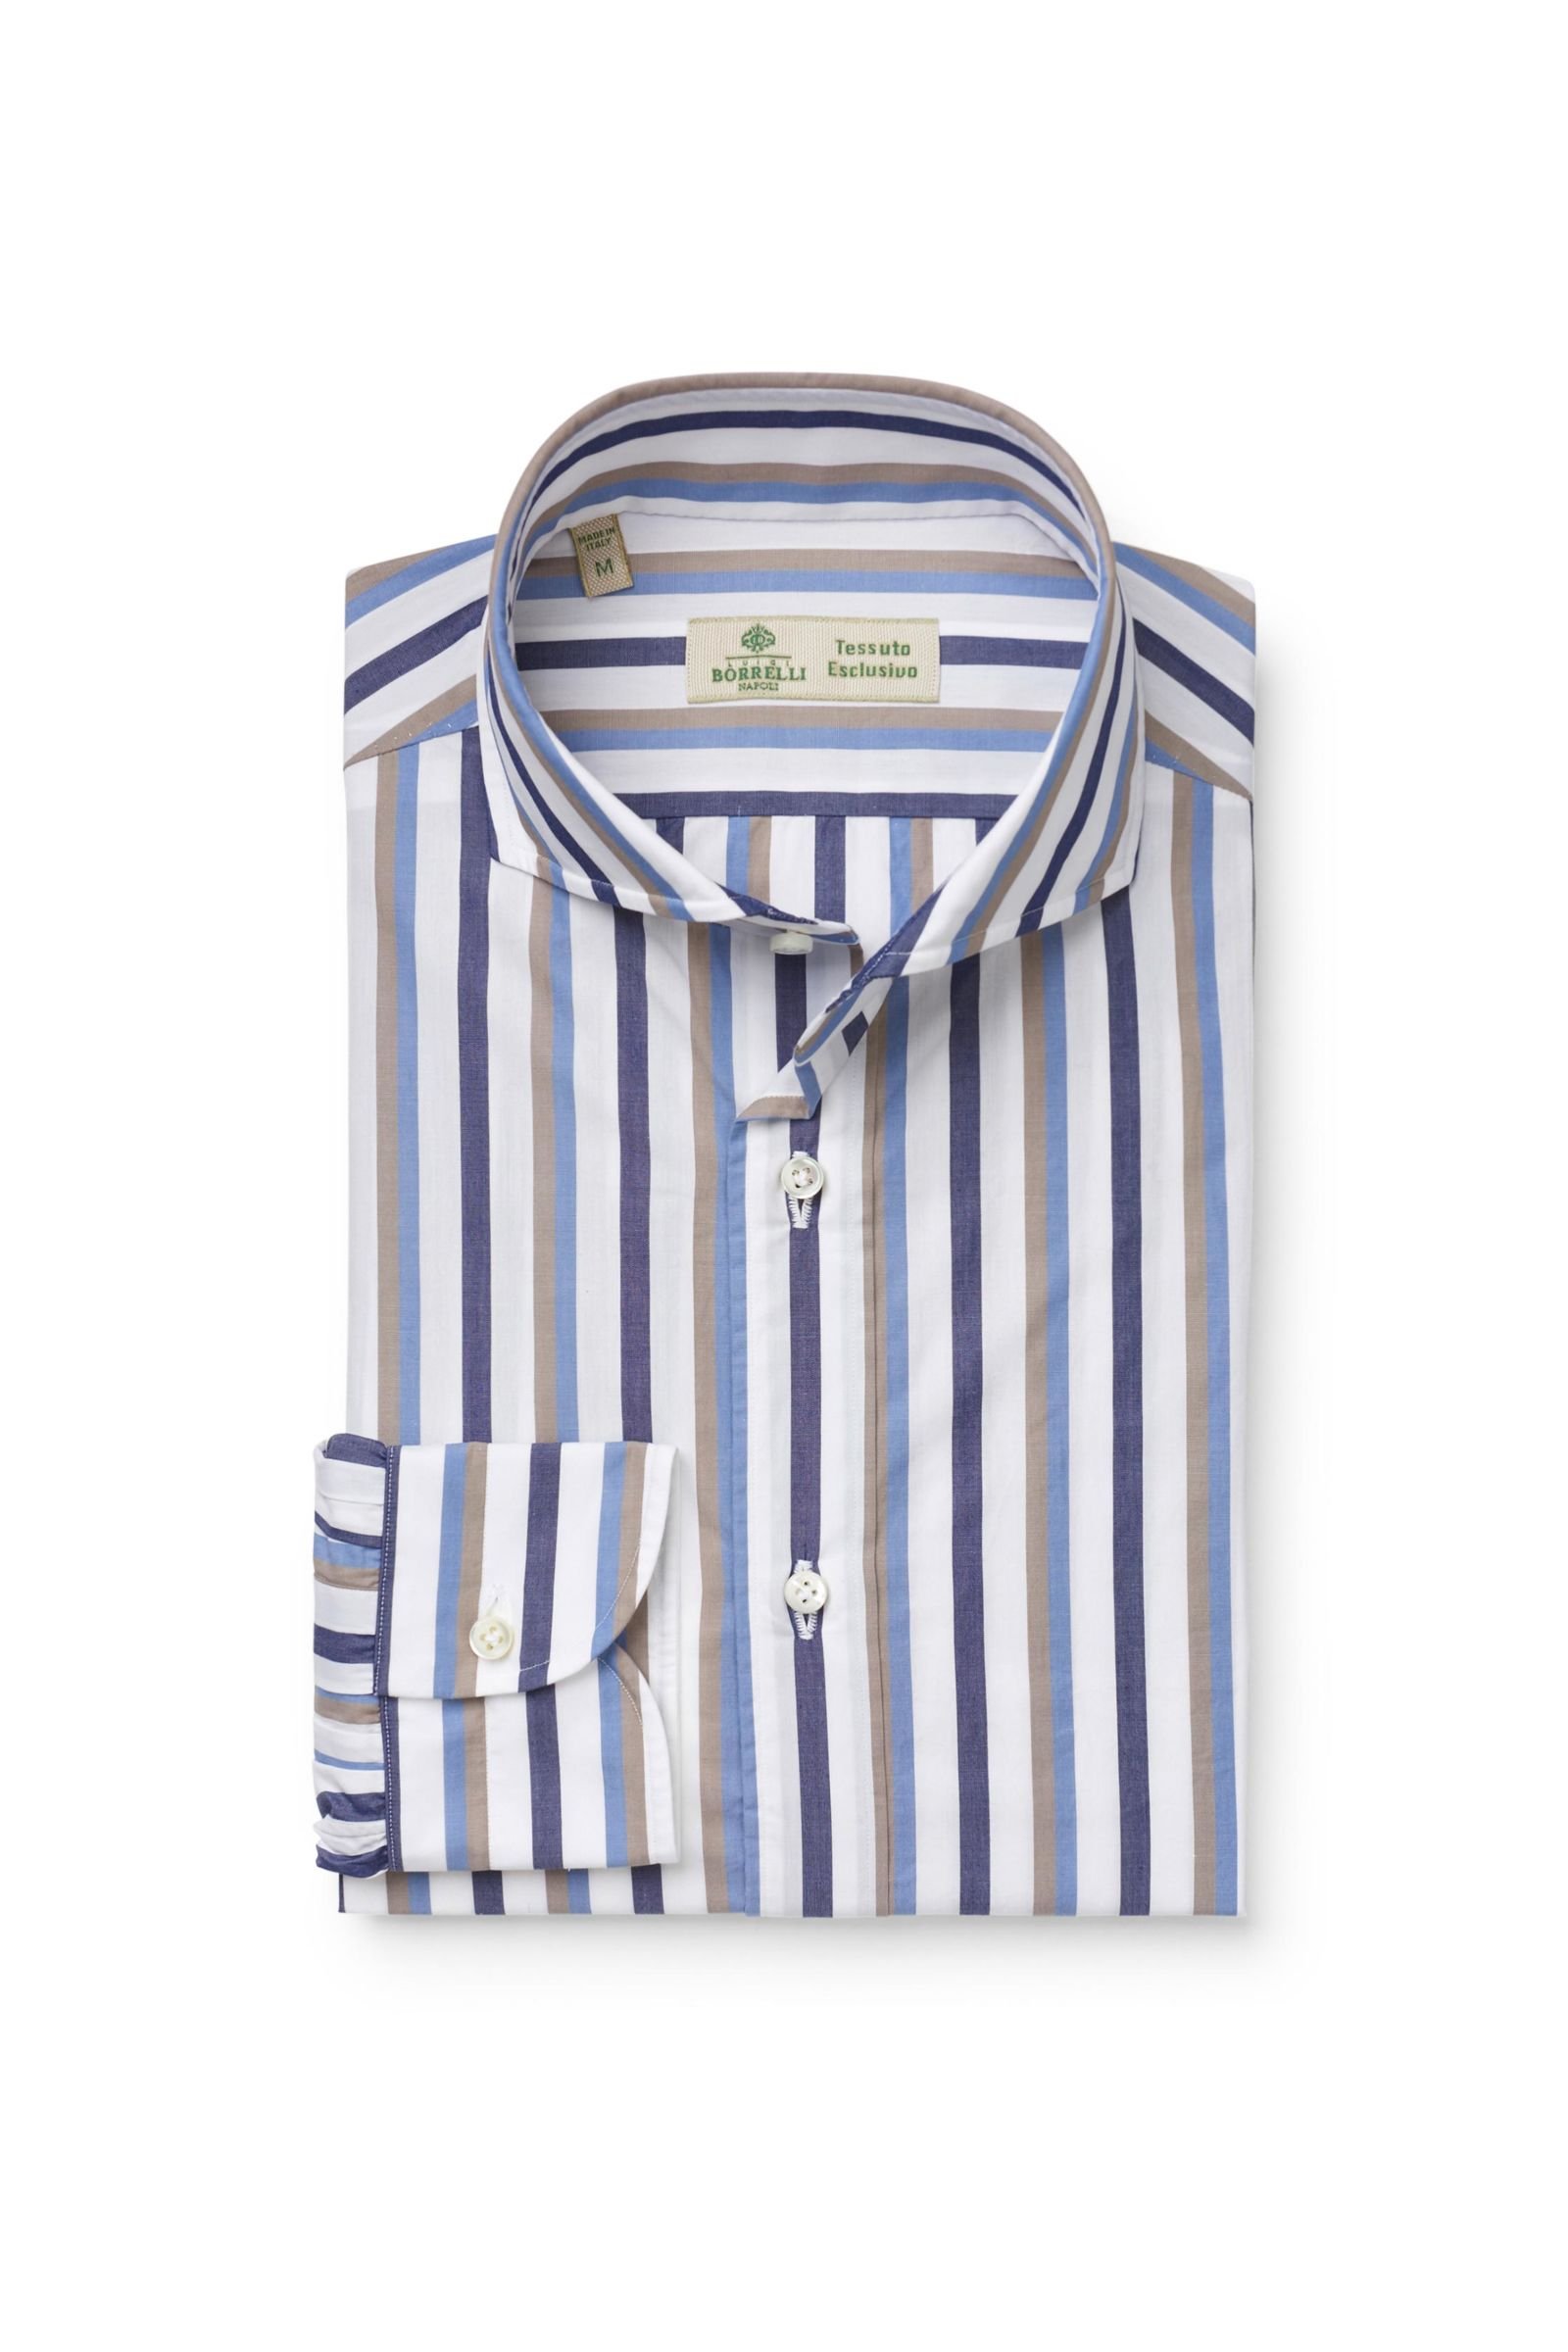 Business shirt 'Felice' shark collar white/navy striped